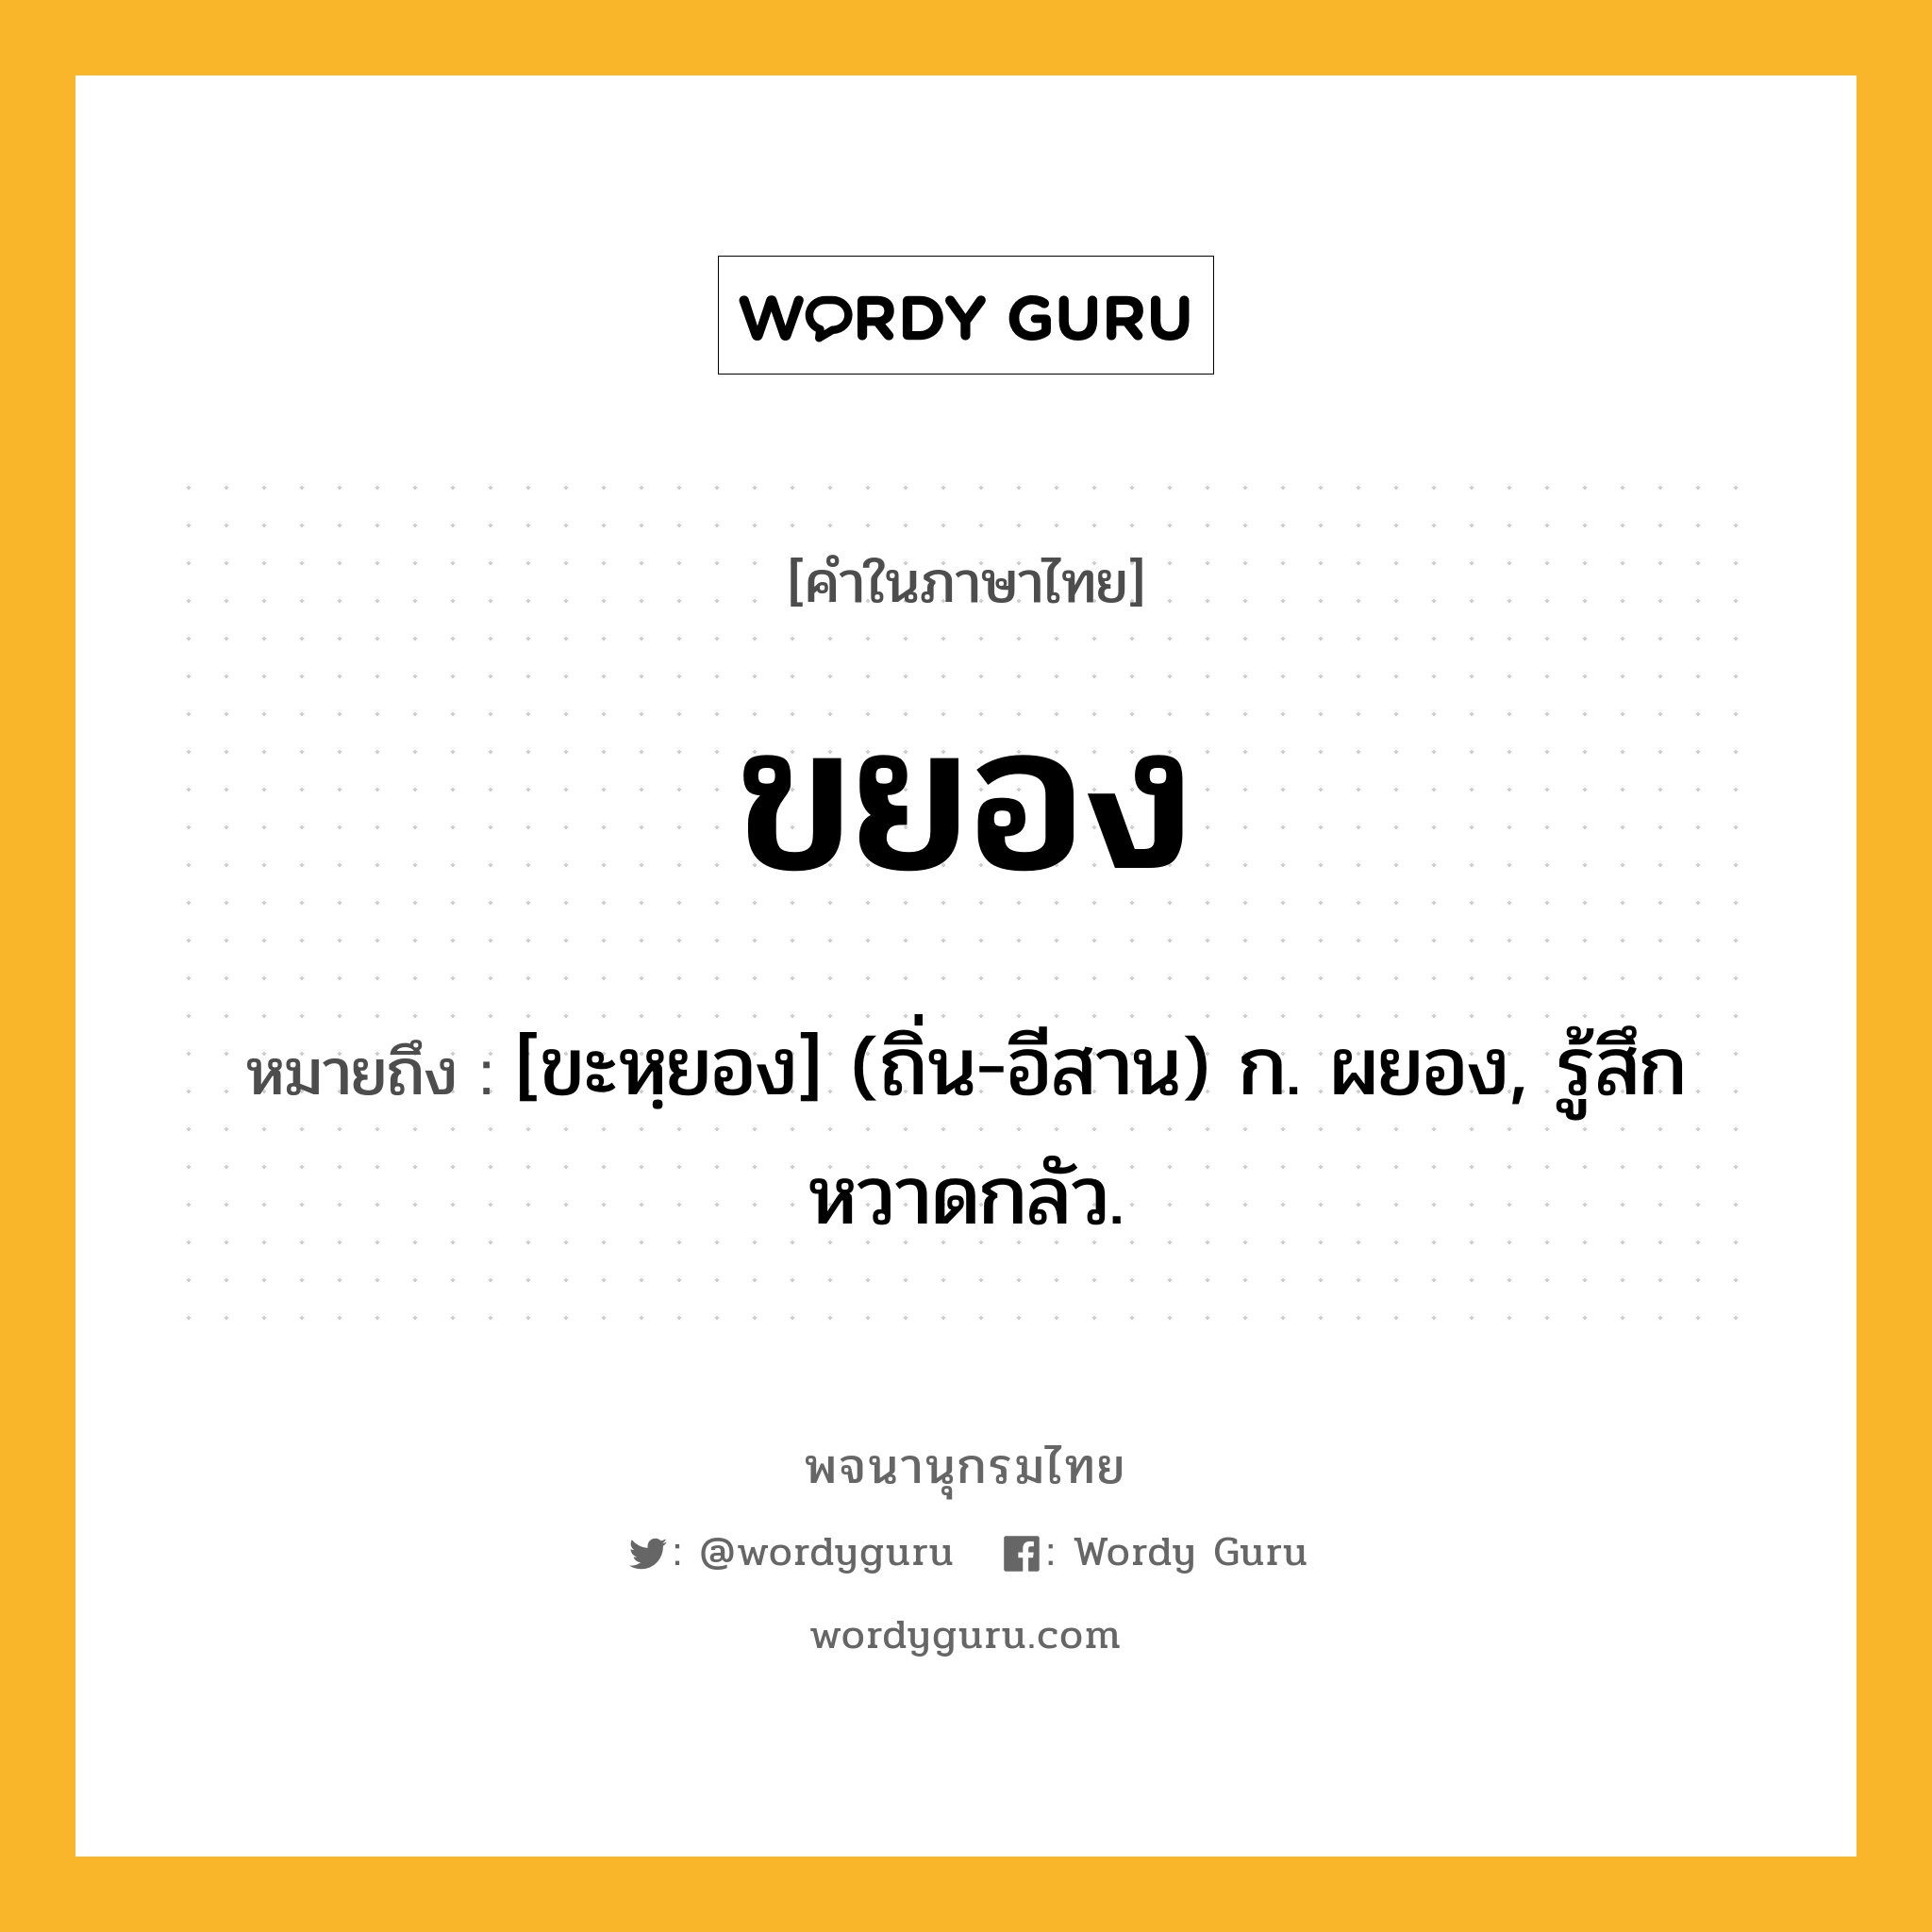 ขยอง ความหมาย หมายถึงอะไร?, คำในภาษาไทย ขยอง หมายถึง [ขะหฺยอง] (ถิ่น-อีสาน) ก. ผยอง, รู้สึกหวาดกลัว.